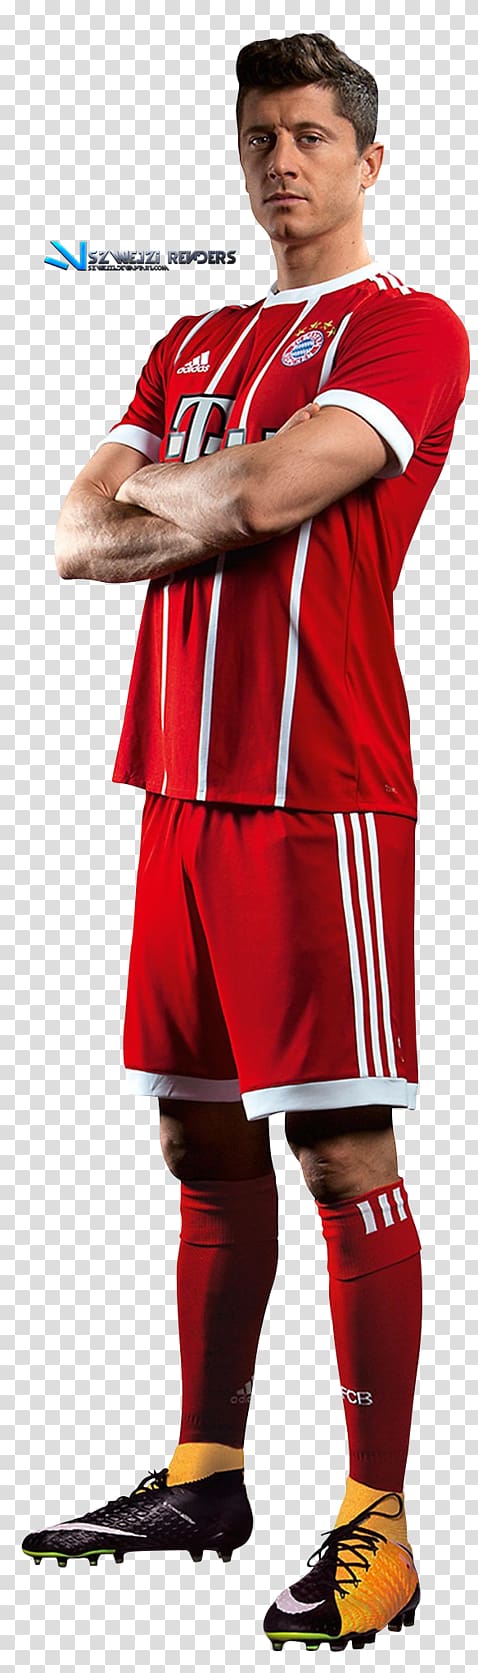 Robert Lewandowski Poland national football team FC Bayern Munich Cheerleading Uniforms Jersey, Robert Lewandowski transparent background PNG clipart